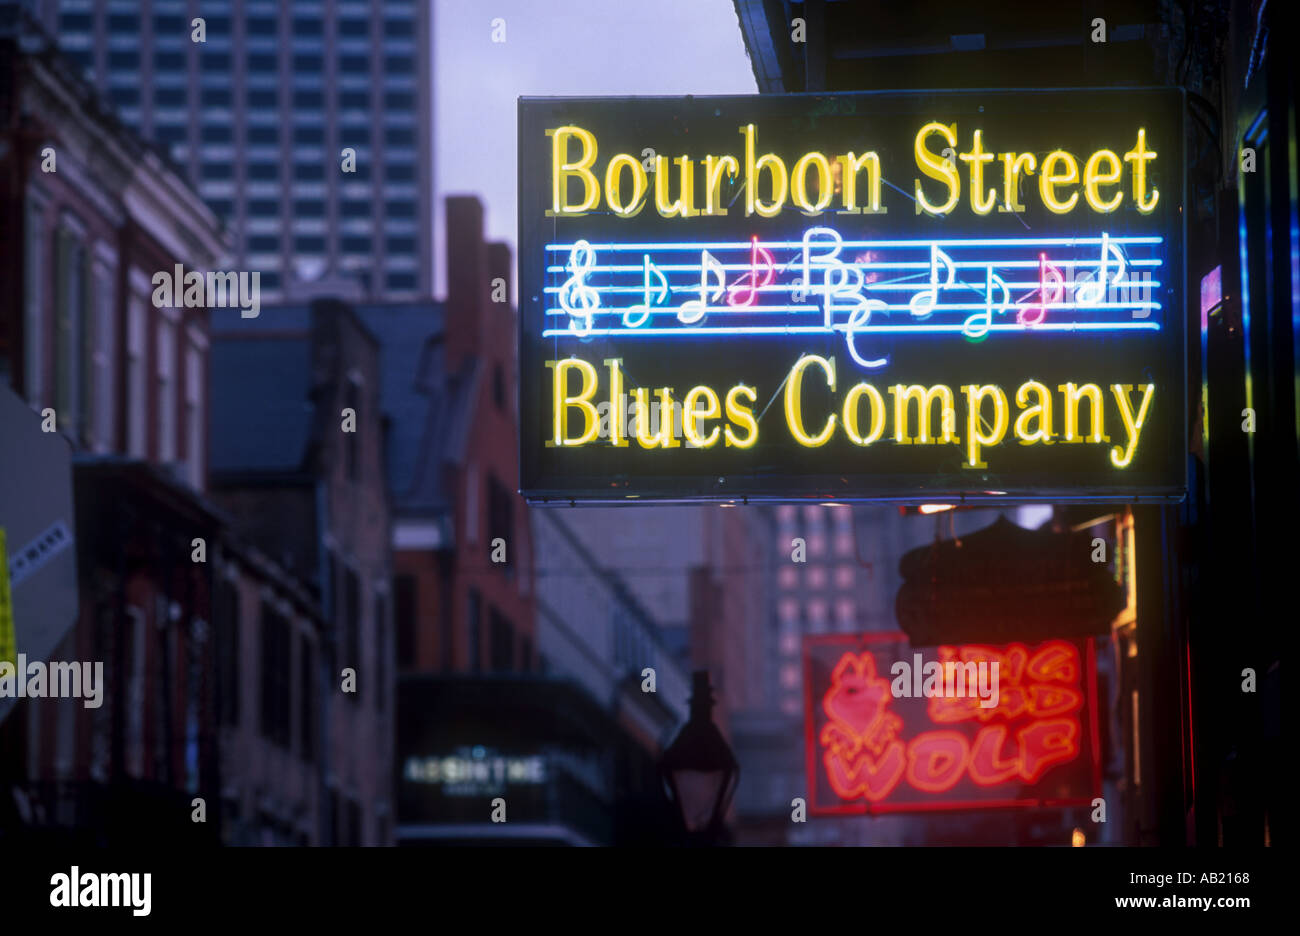 USA Louisiana New Orleans Bourbon Street Illuminated neon street signs for Blues Company Stock Photo